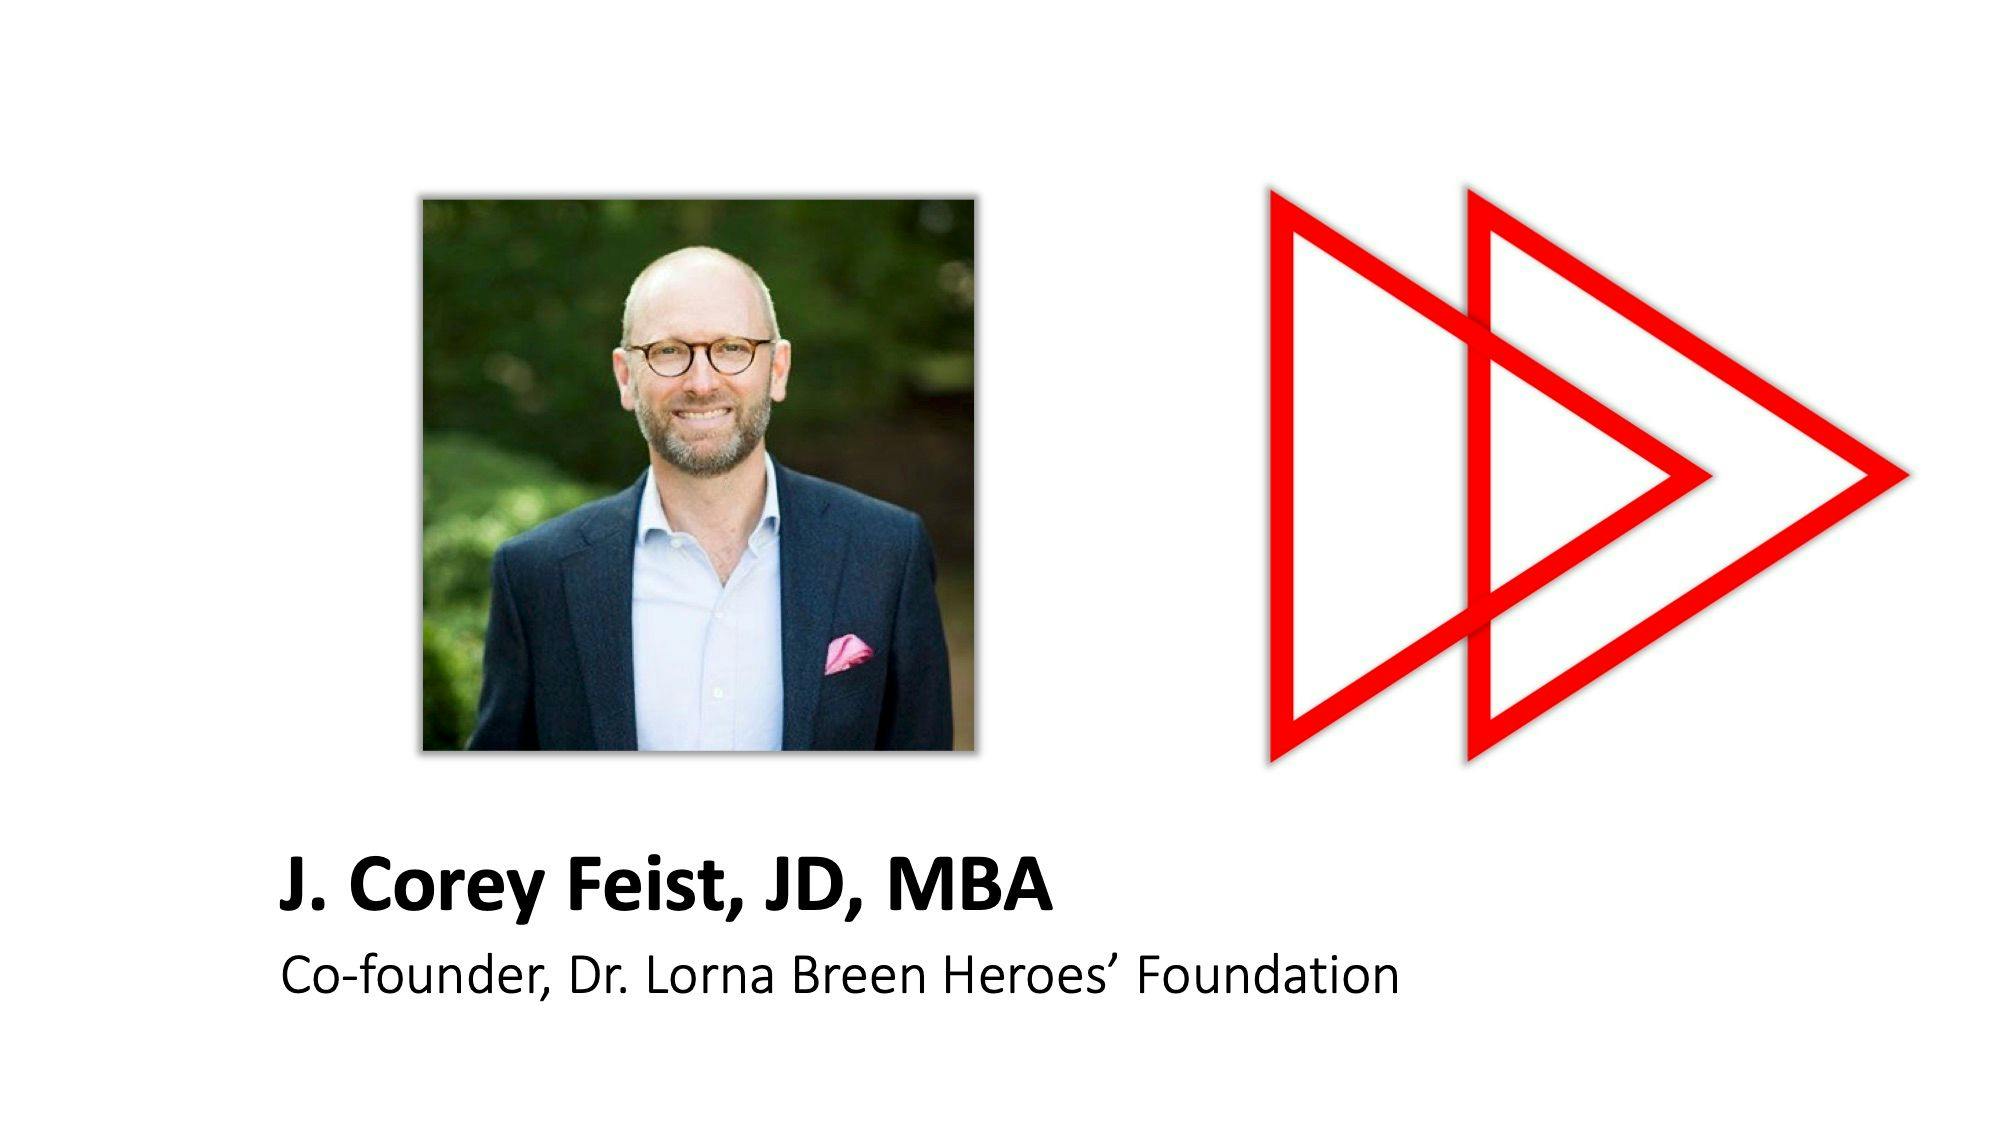 J. Corey Feist, JD, MBA, gives expert advice